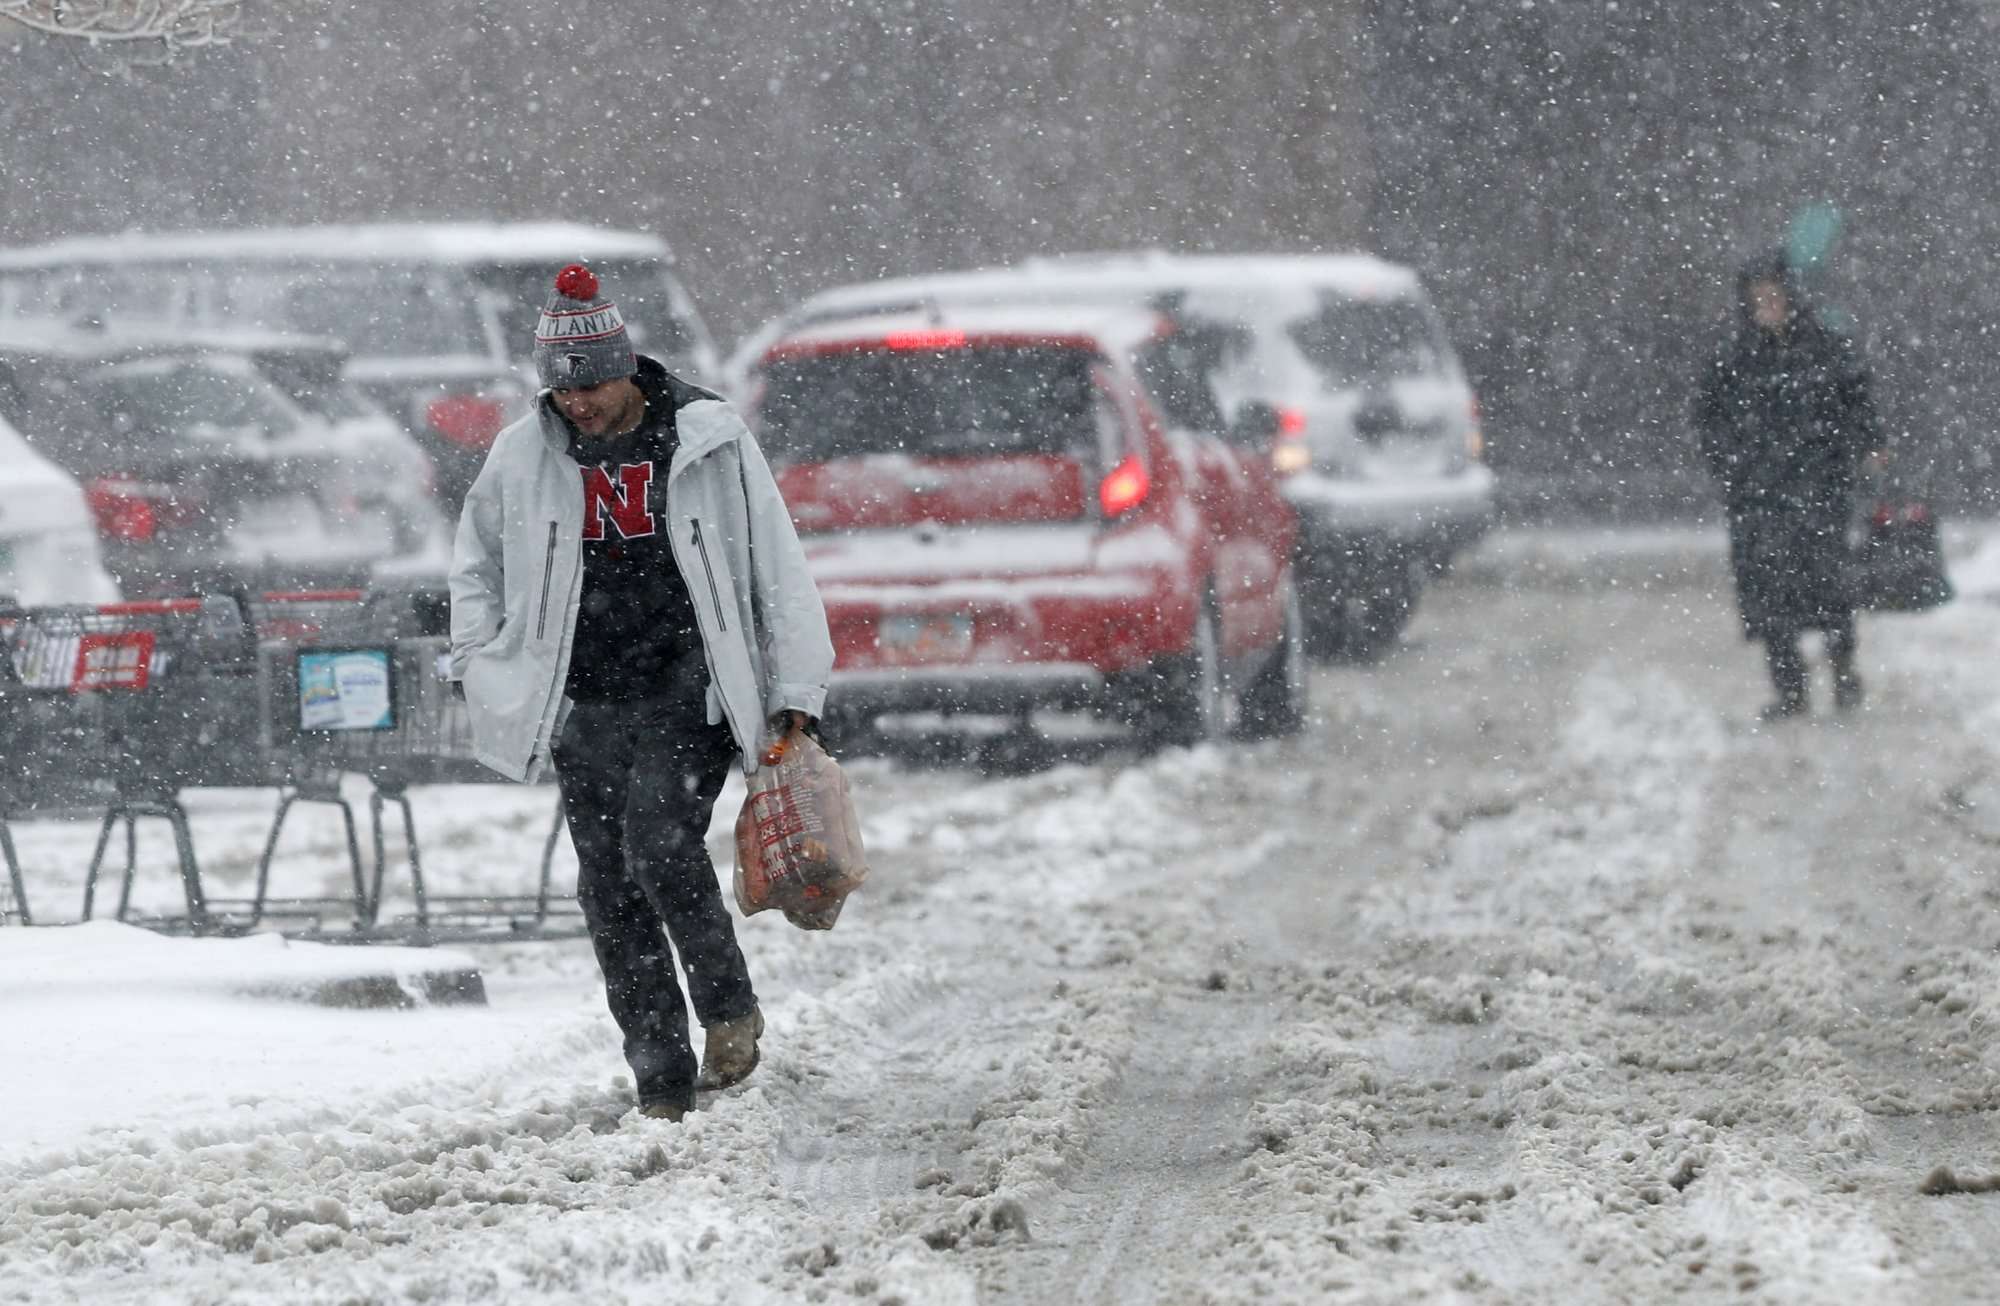 Los compradores luchan para dirigirse a sus vehículos fuera de una tienda de comestibles mientras una tormenta a finales de invierno arrastra vientos huracanados y vientos de nieve en la montaña. AP